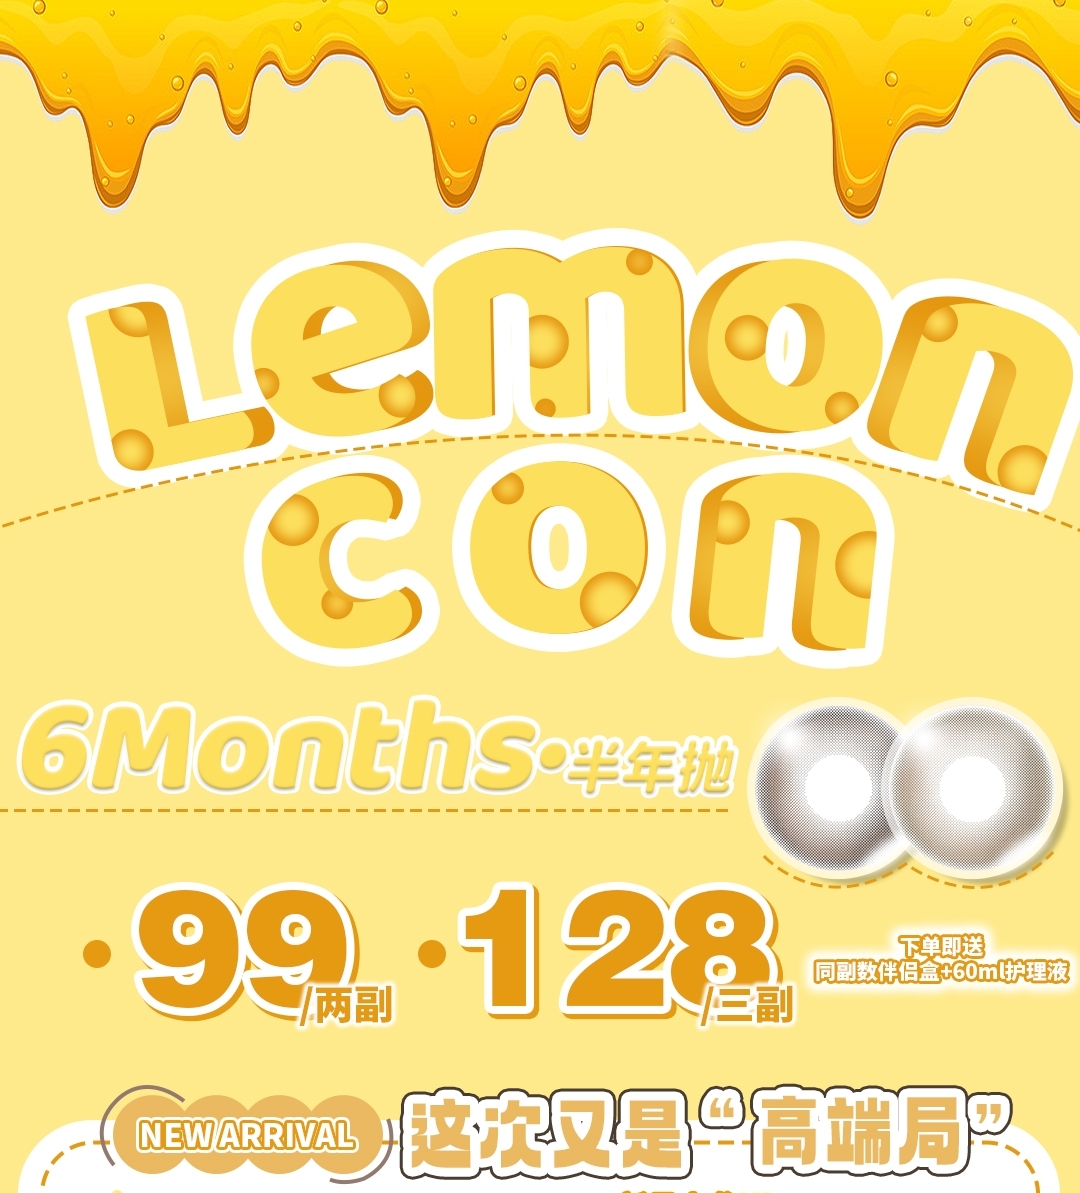 【半年抛上新】Lemoncon 五一限定首发 直击初恋审美的の奶酪小方 神仙感直接upup